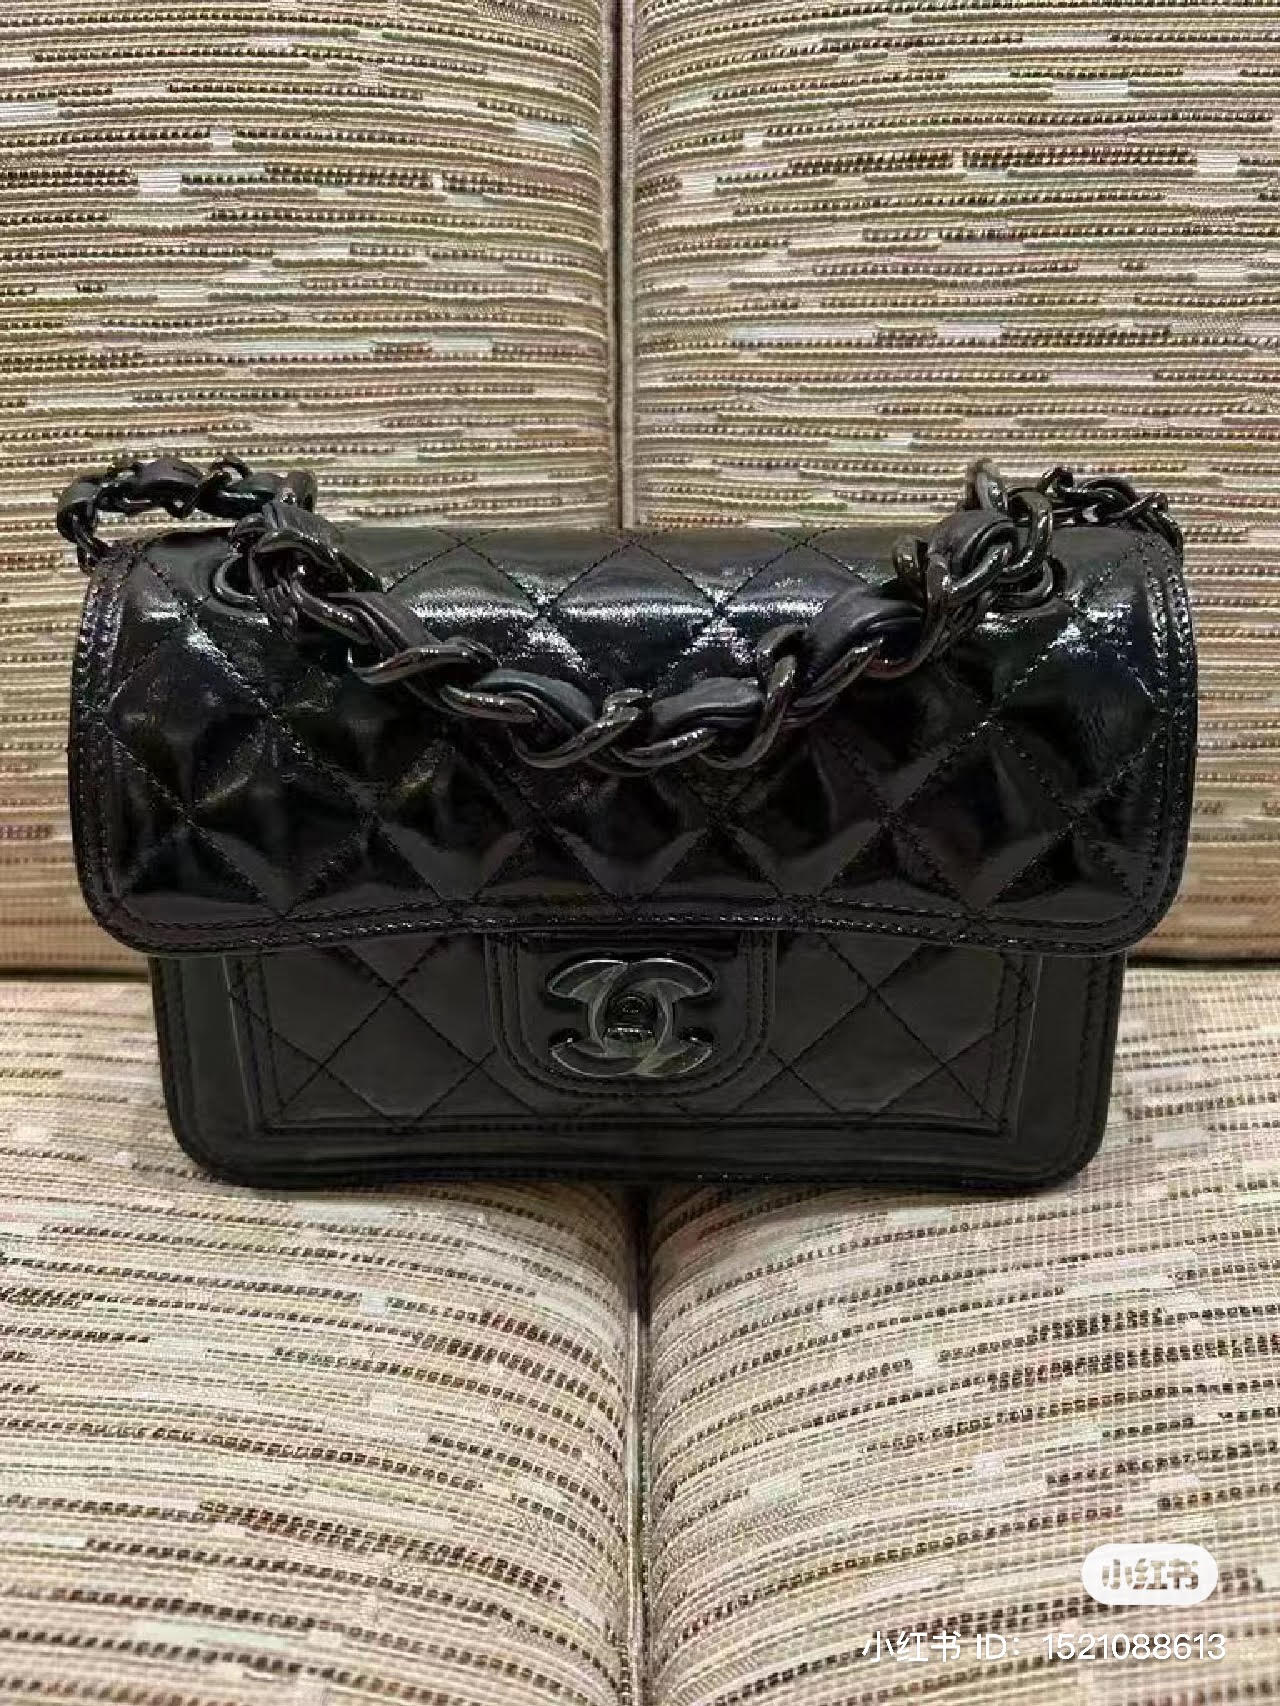 Chanel Flap Coin Purse w/Chain w/ Tags - Black Mini Bags, Handbags